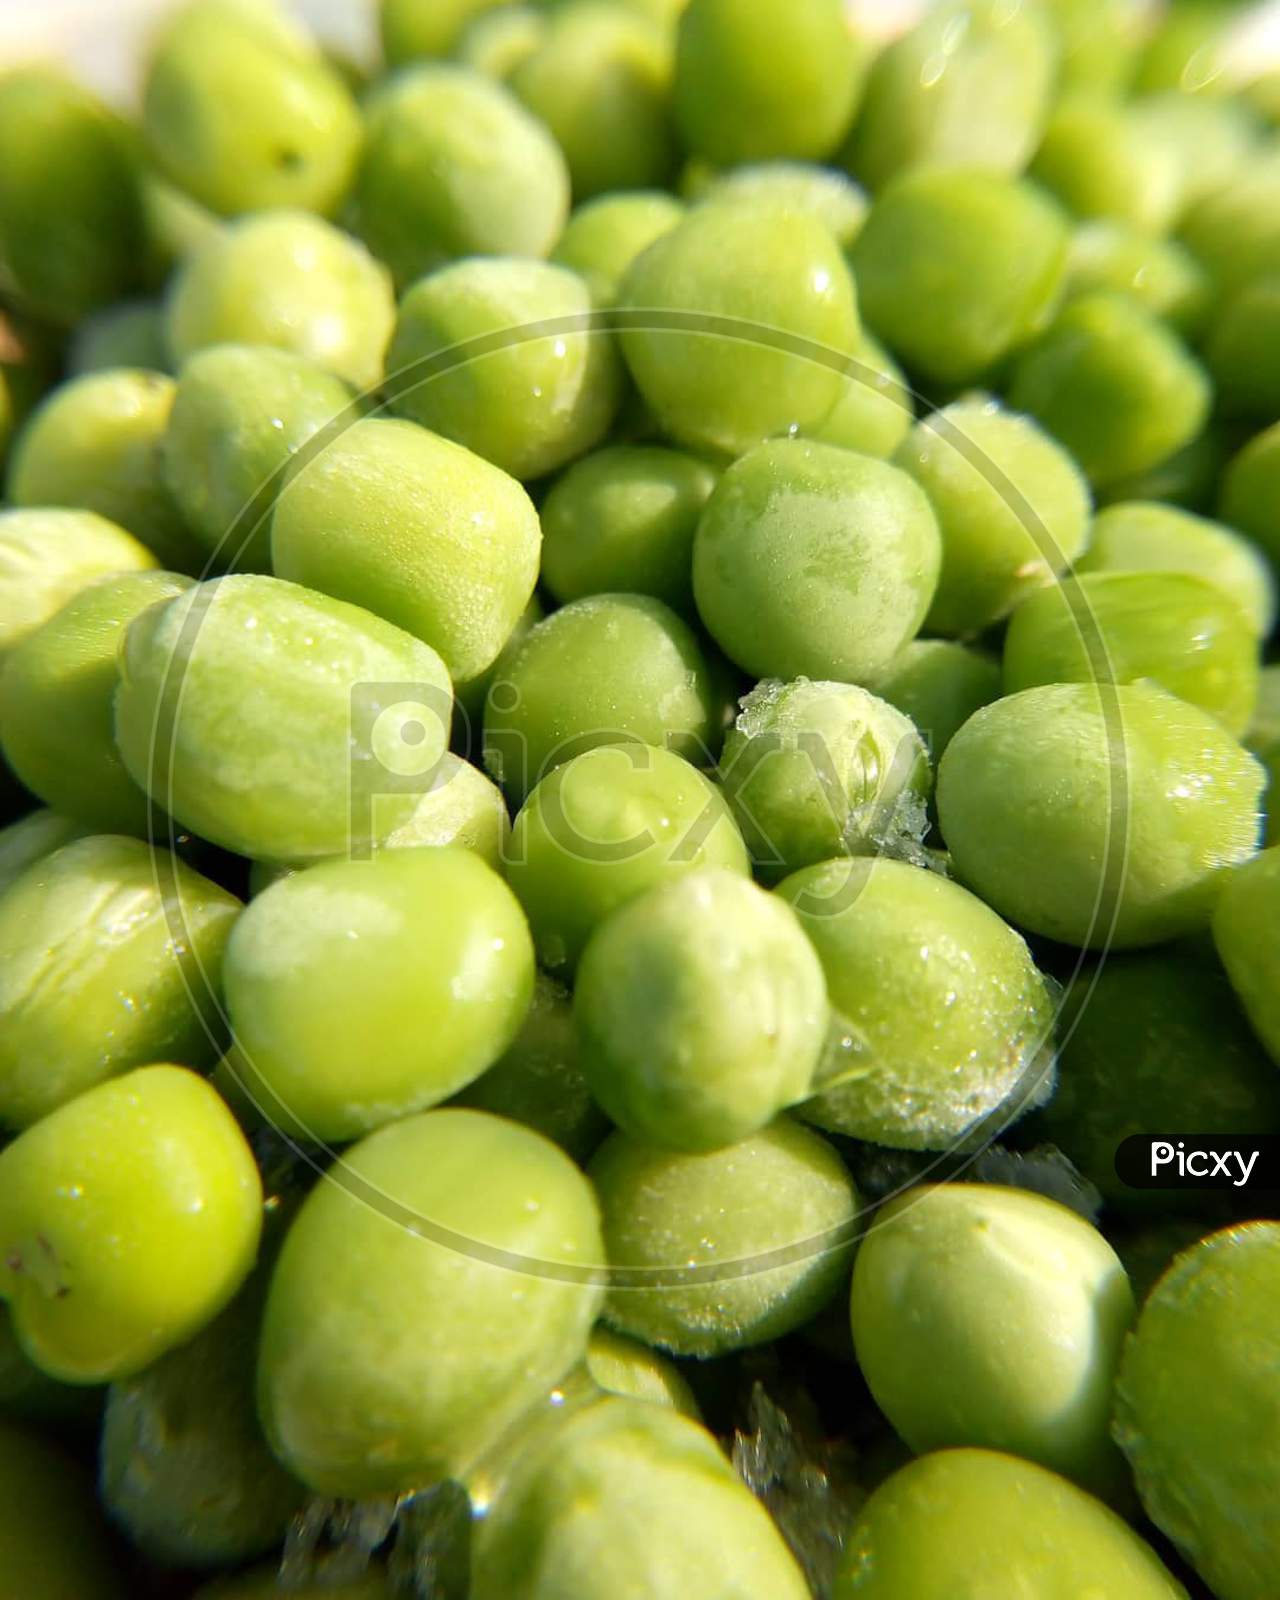 Freezed green peas in bulk in heap